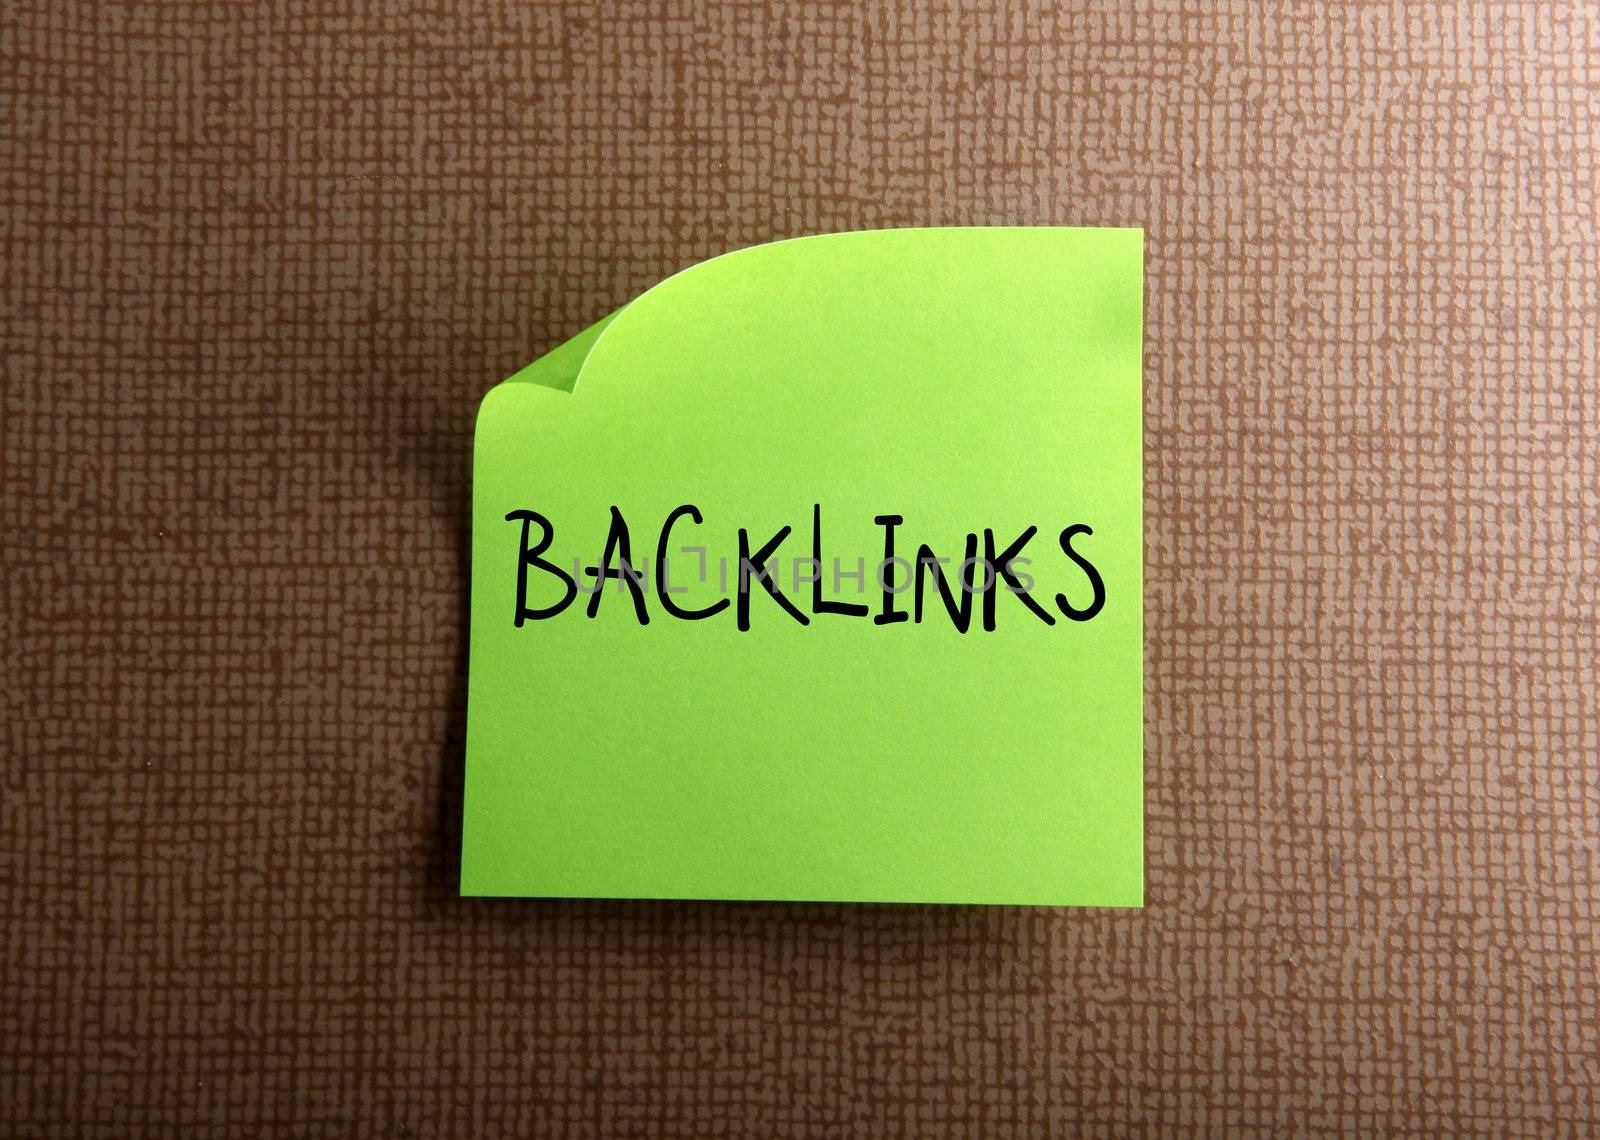 Backlinks by nenov